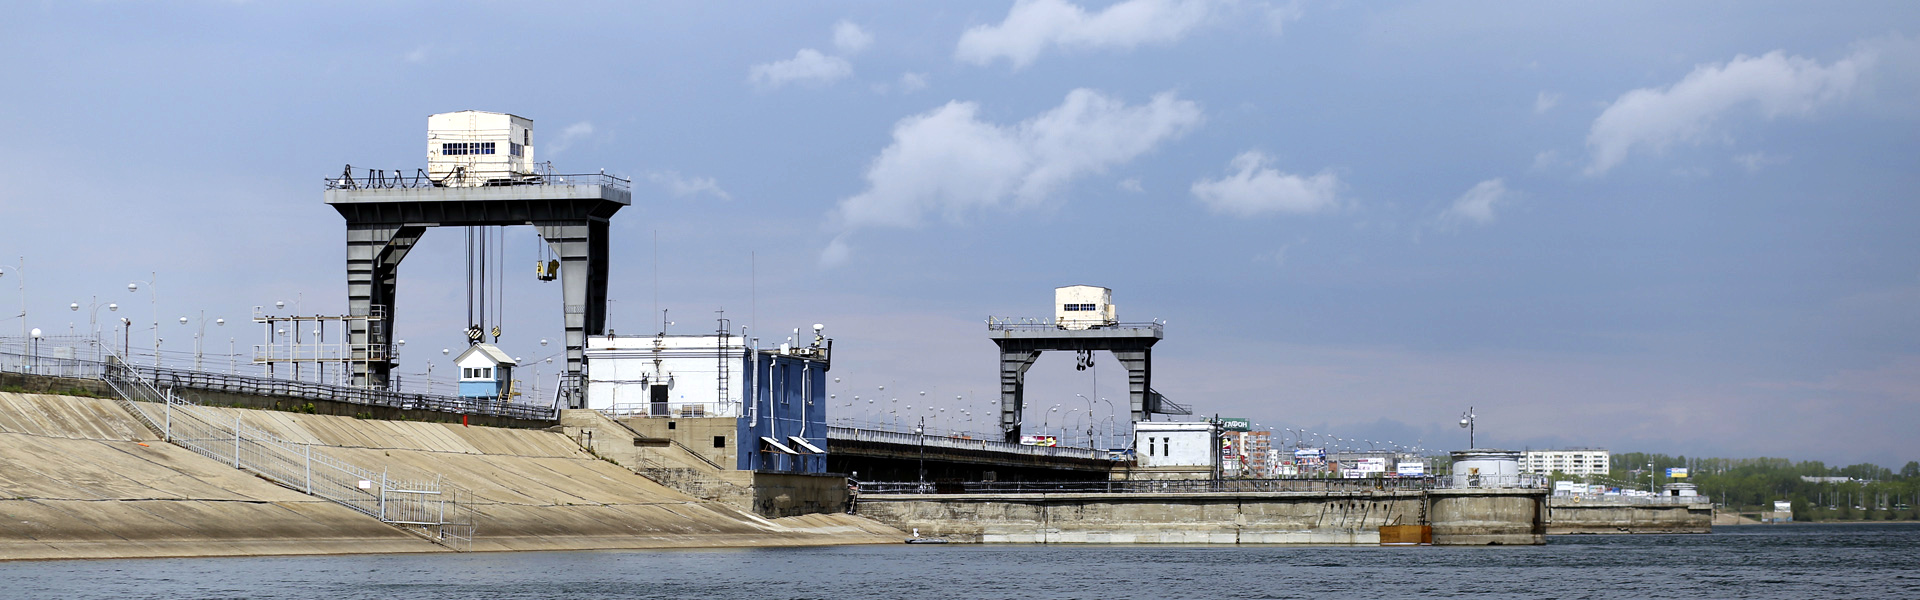 Иркутская ГЭС. Автор фото — Регина Ступурайте